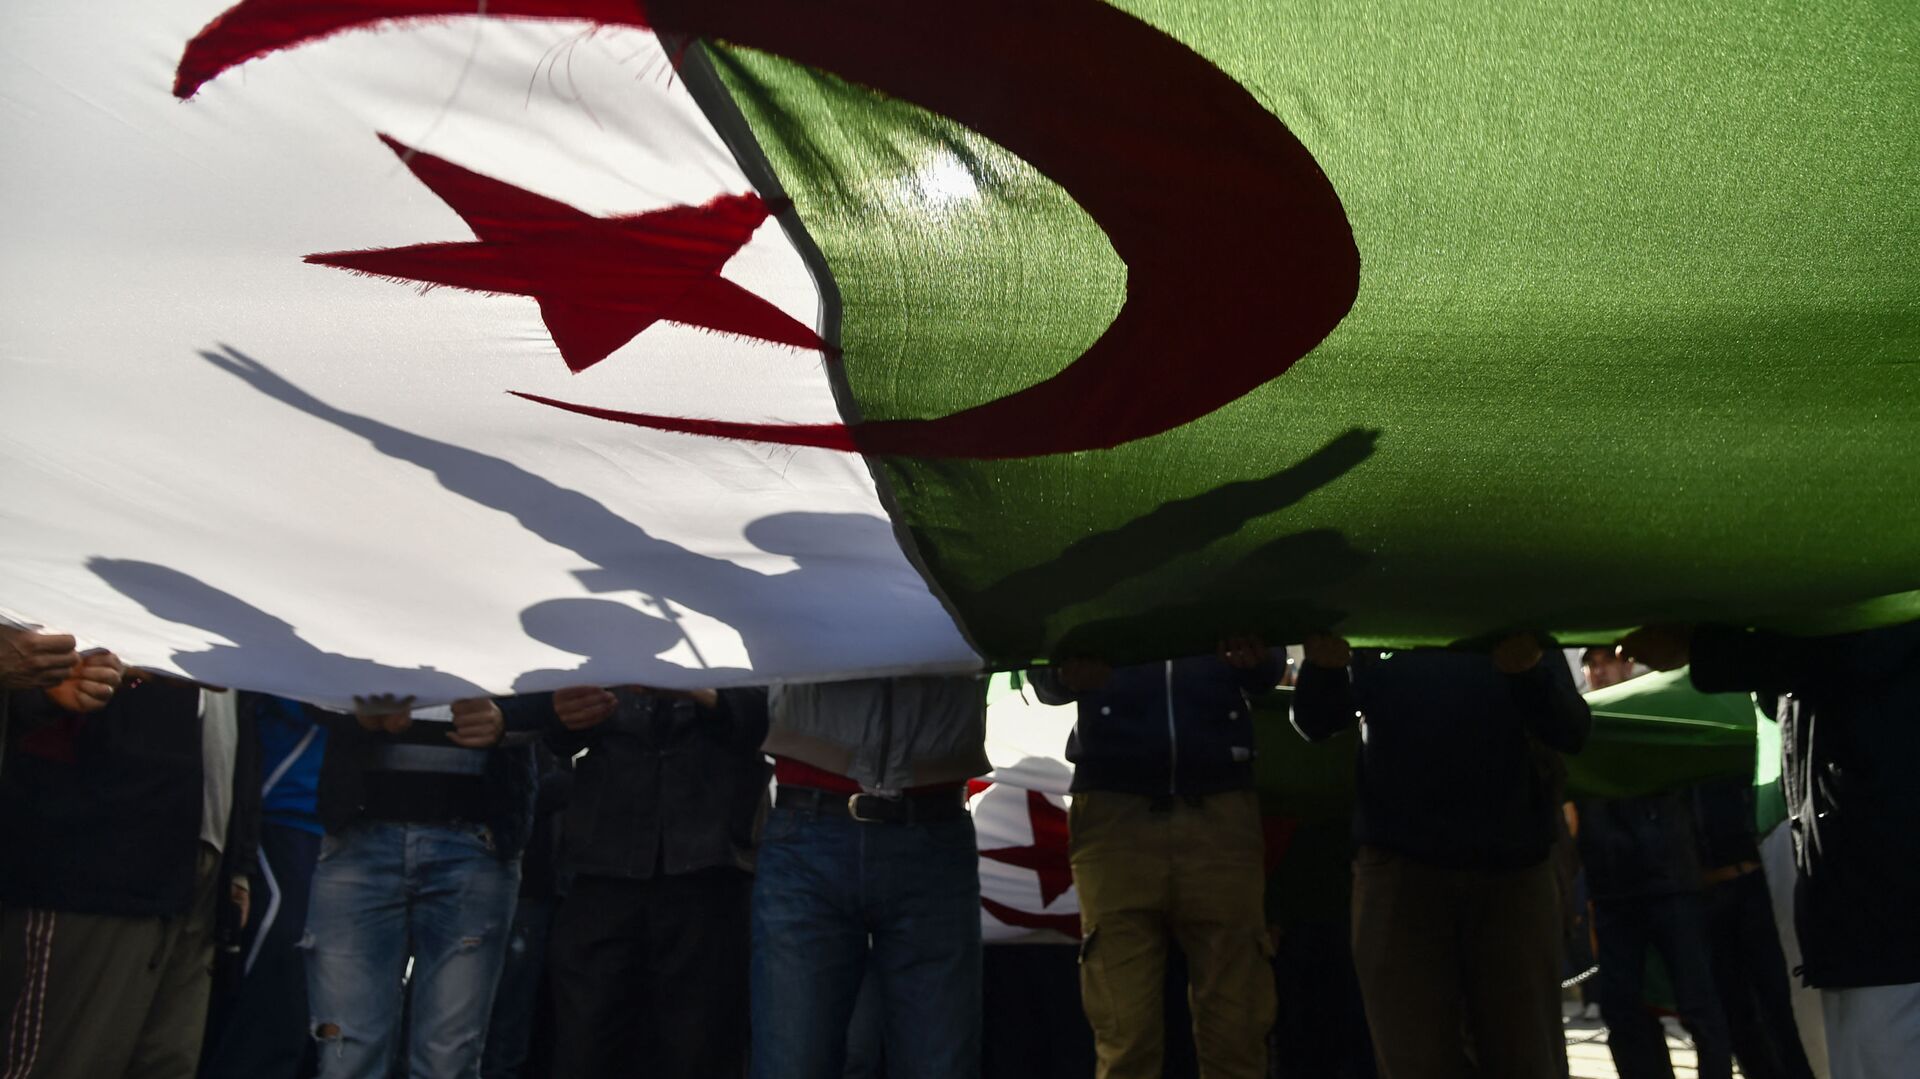 Des manifestants algériens brandissent le drapeau national lors d'une manifestation dans la capitale Alger, le 28 février 2020. - Des manifestations de masse ont éclaté en Algérie il y a un an samedi dernier, en réponse au président Abdelaziz Bouteflika qui a annoncé son intention de briguer un cinquième mandat après 20 ans au pouvoir -- bien qu'il soit affaibli par un accident vasculaire cérébral survenu en 2013. (Photo par RYAD KRAMDI / AFP) - Sputnik Afrique, 1920, 12.04.2021